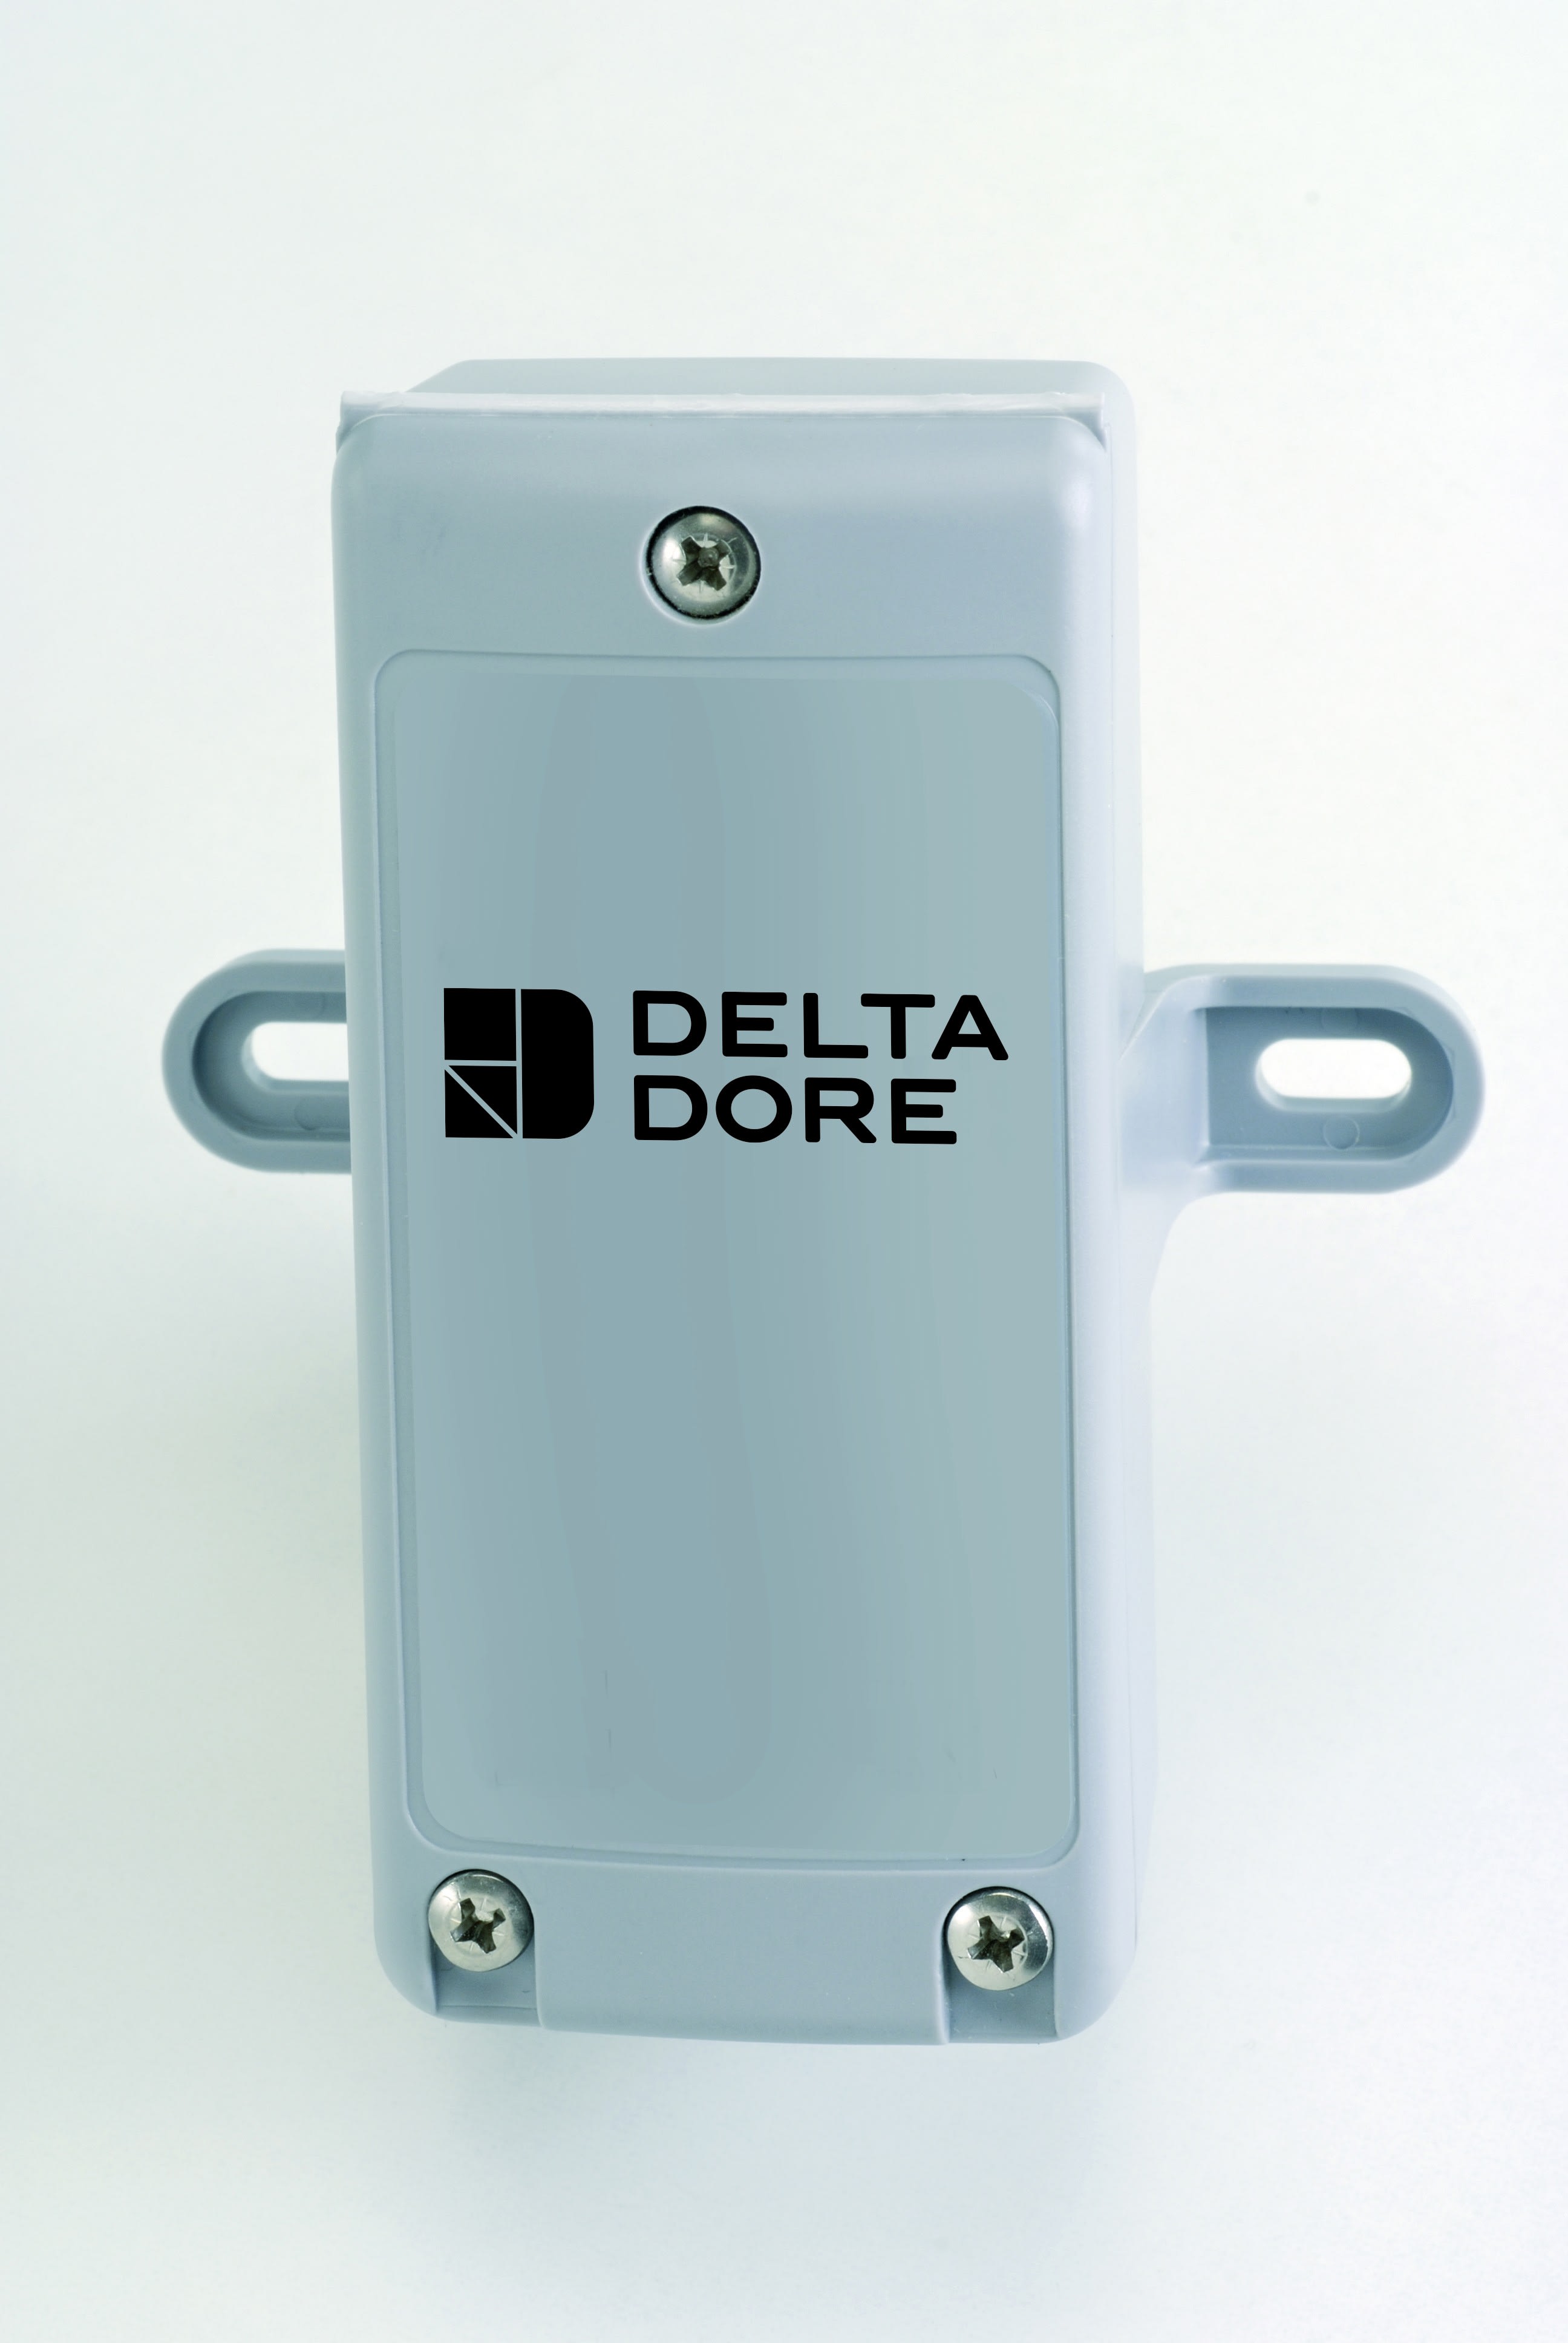 Delta Dore - Sonde exterieure filaire  Accessoire pour regulateur et thermostat modulaire